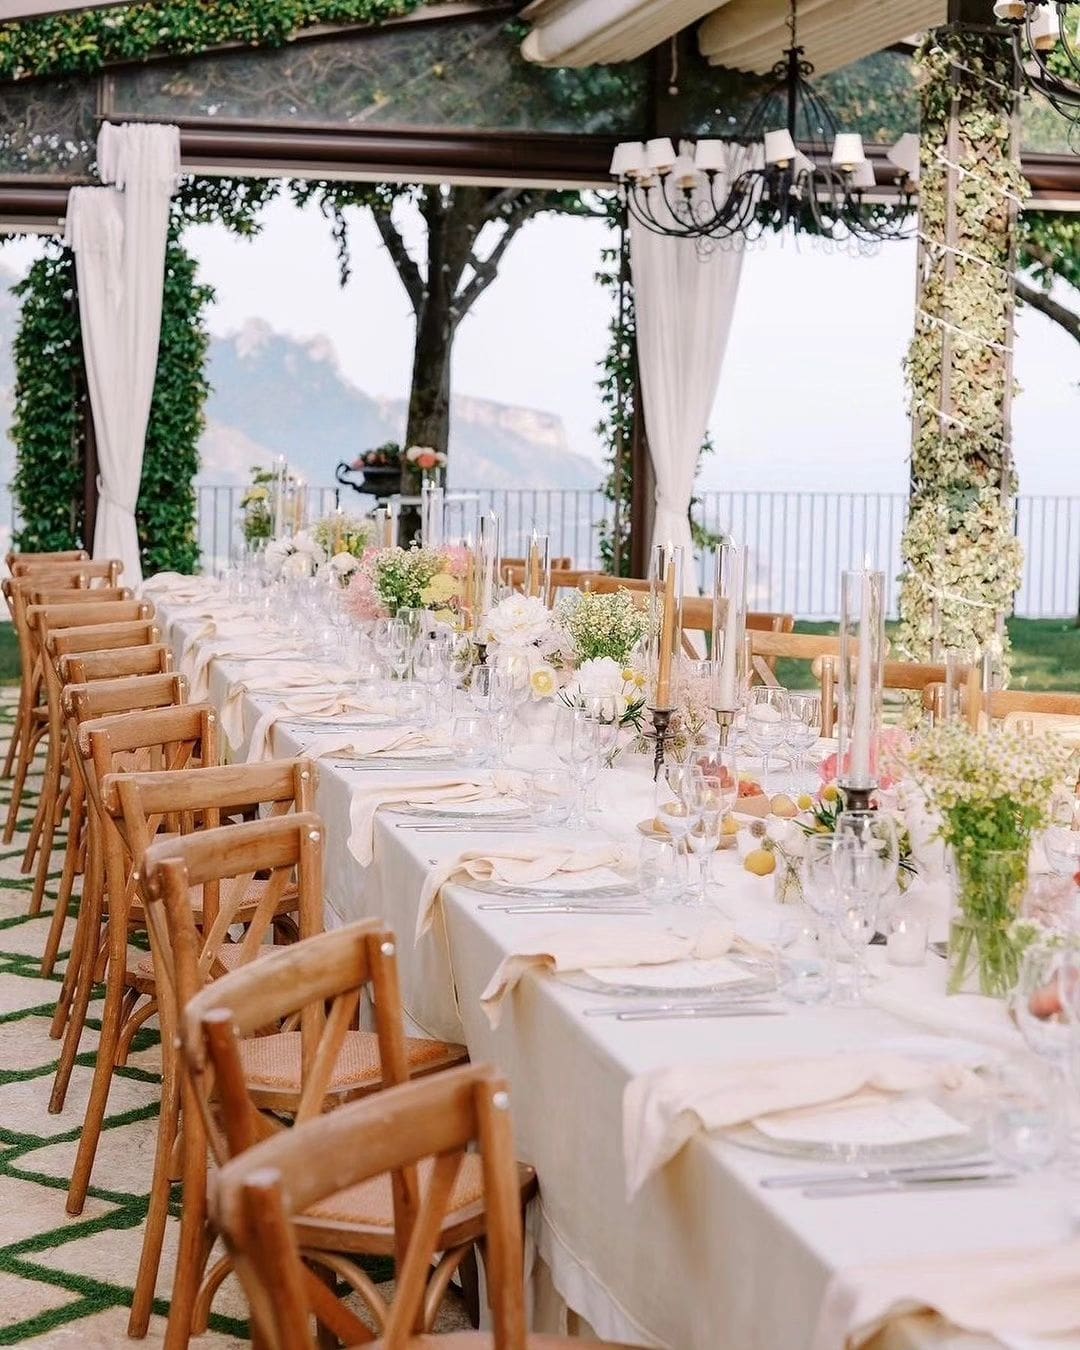 Mesa de bodas elegantemente decorada en Villa Eva, Costa Amalfitana, con vista panorámica al mar y rodeada de vegetación exuberante